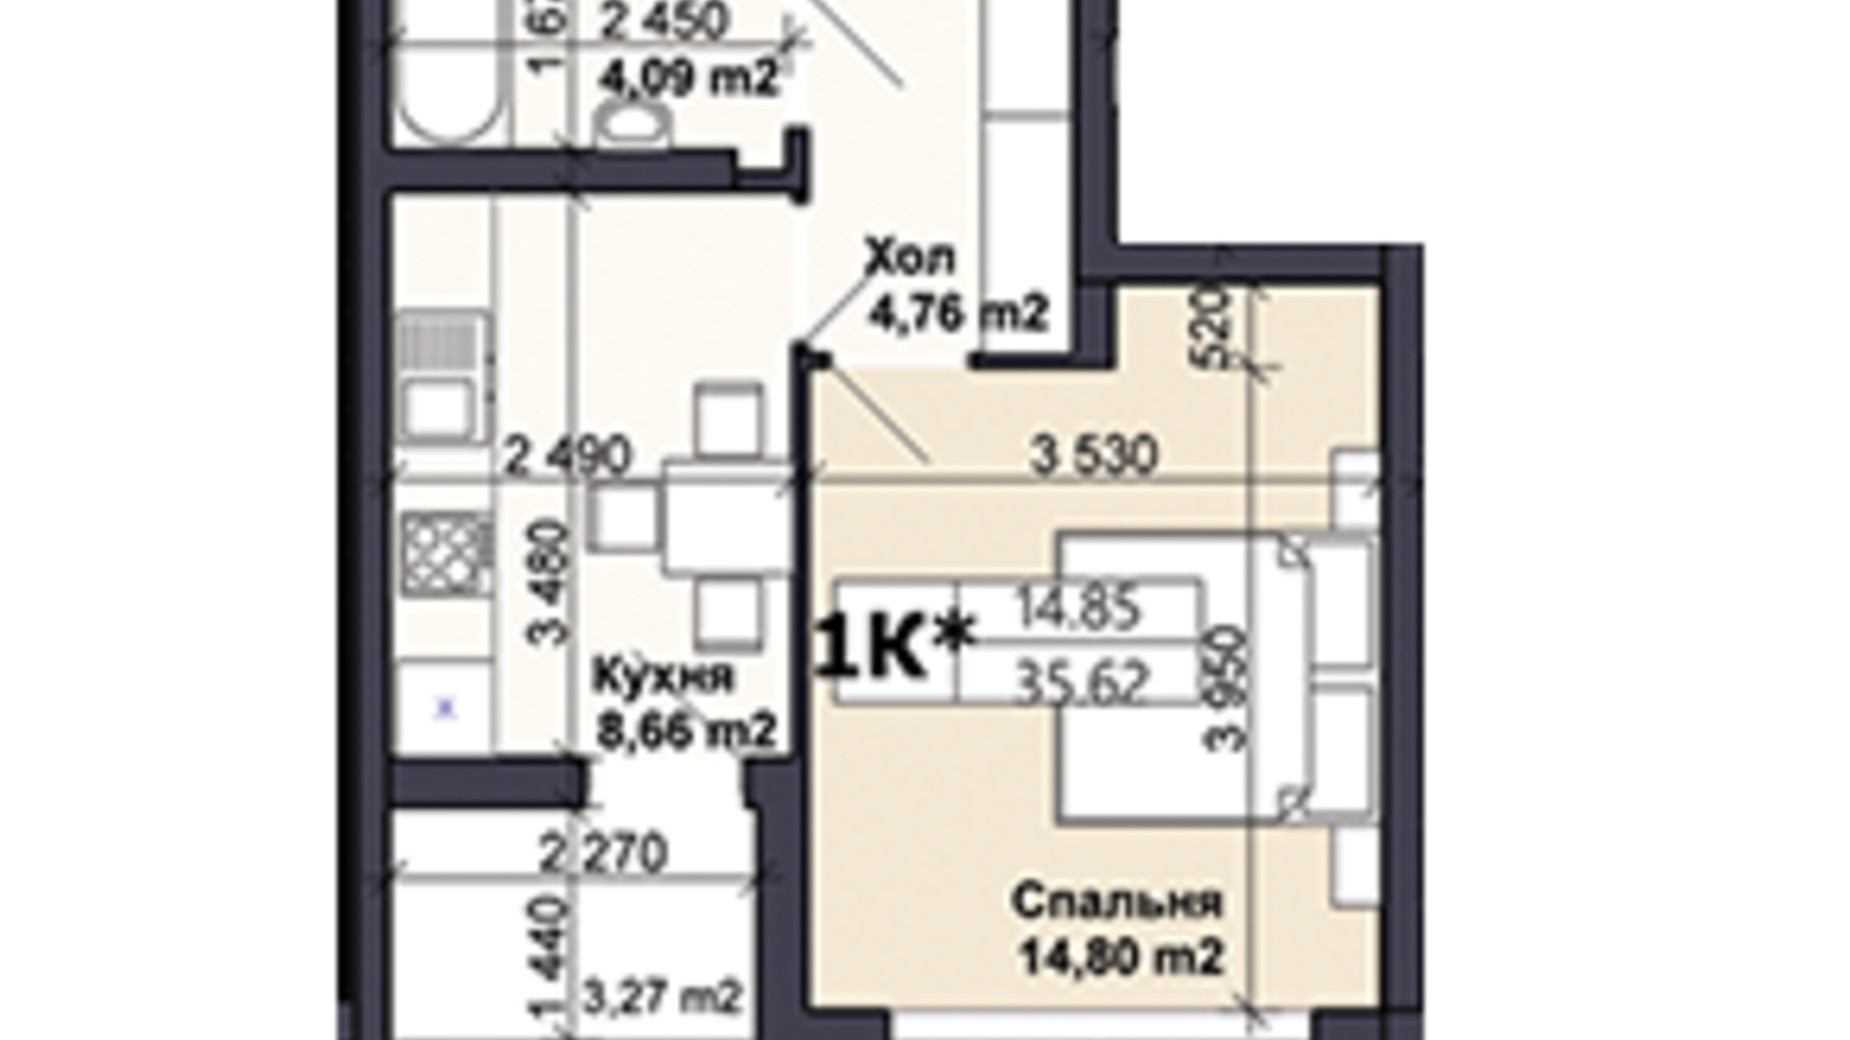 Планування 1-кімнатної квартири в ЖК Саме той 35.62 м², фото 585408